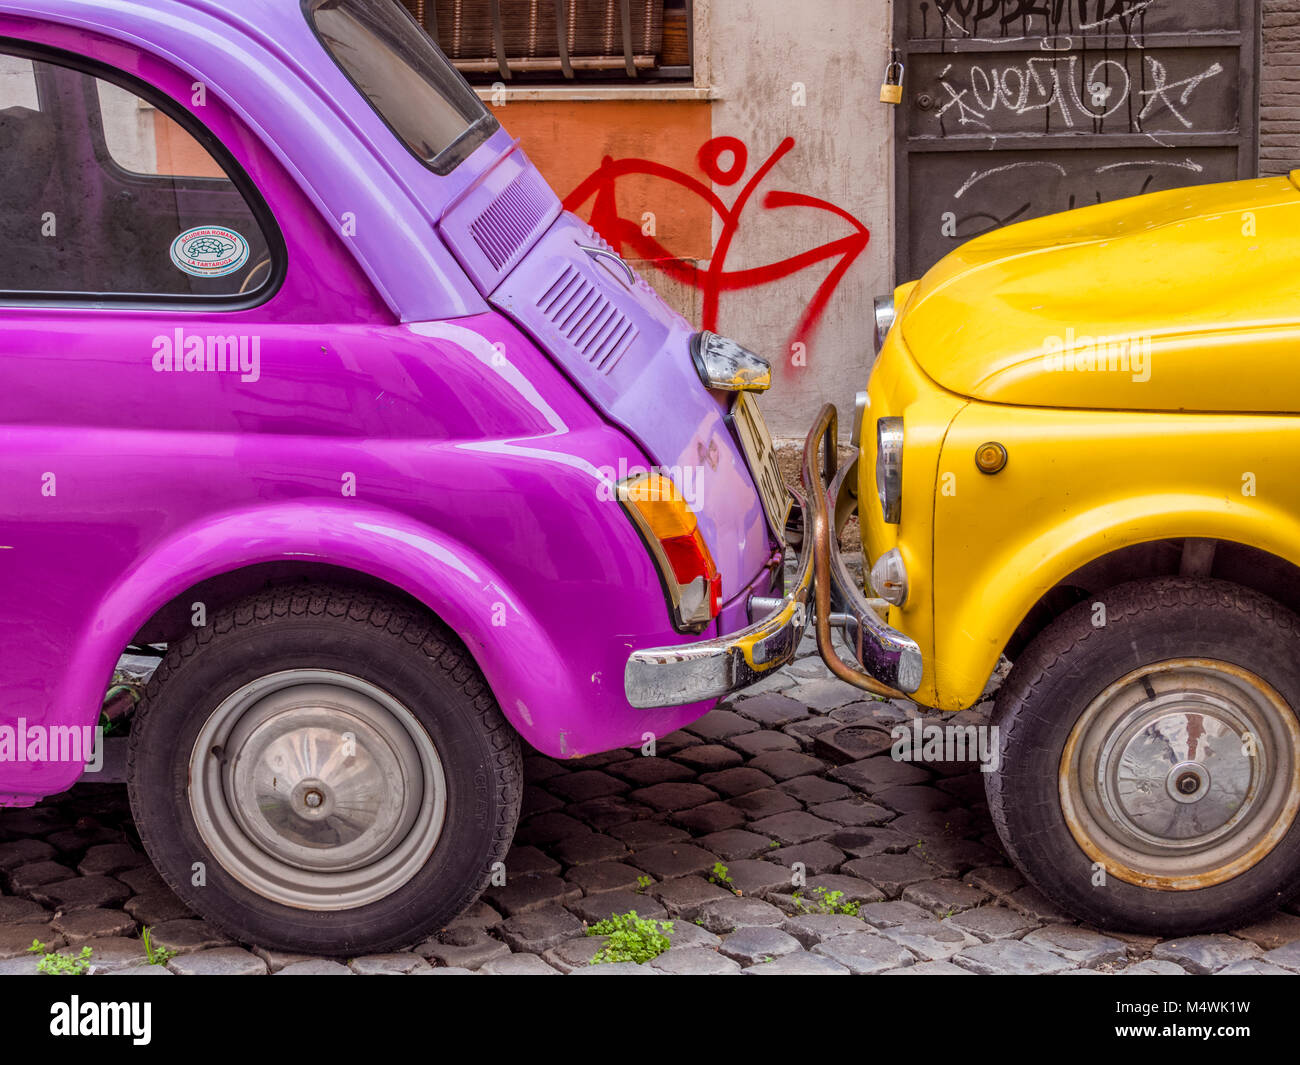 Fiat Cinquecento in Rome, Italy Stock Photo